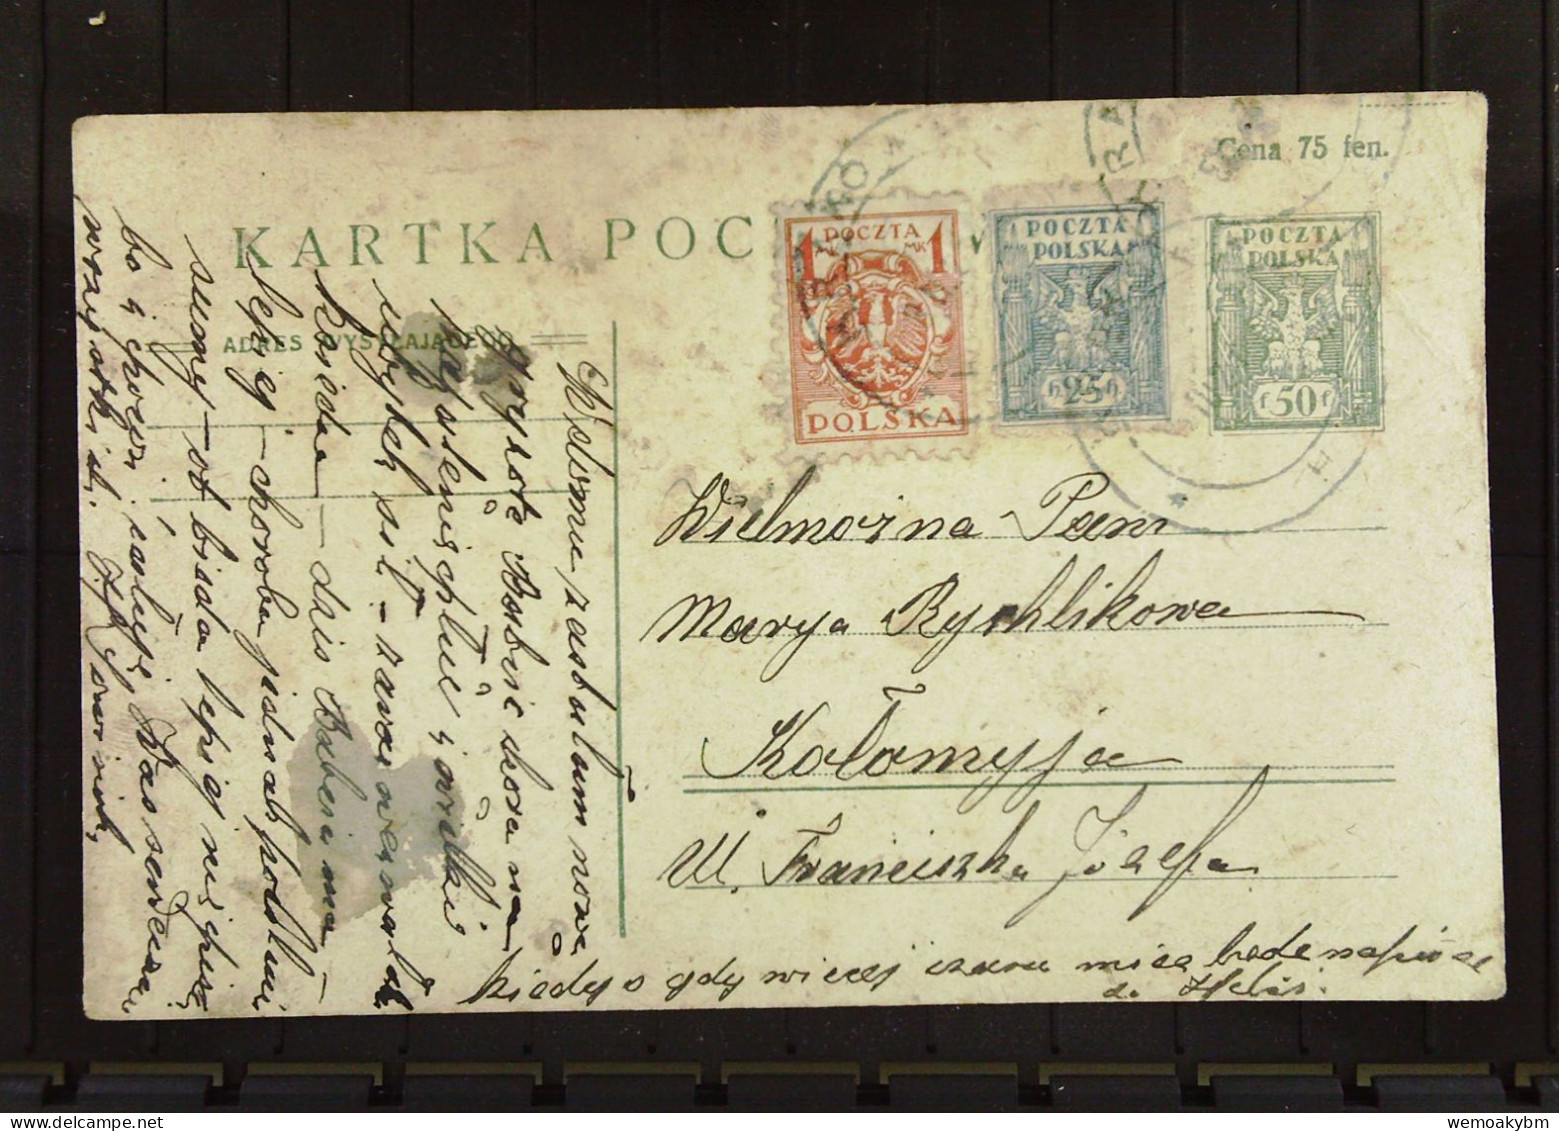 Polen: Ganzsachen-Postkarte Mit POLSKA 50 F Und Zusatz-Marken 25 H Und 1 Mk Um 1920 - Storia Postale